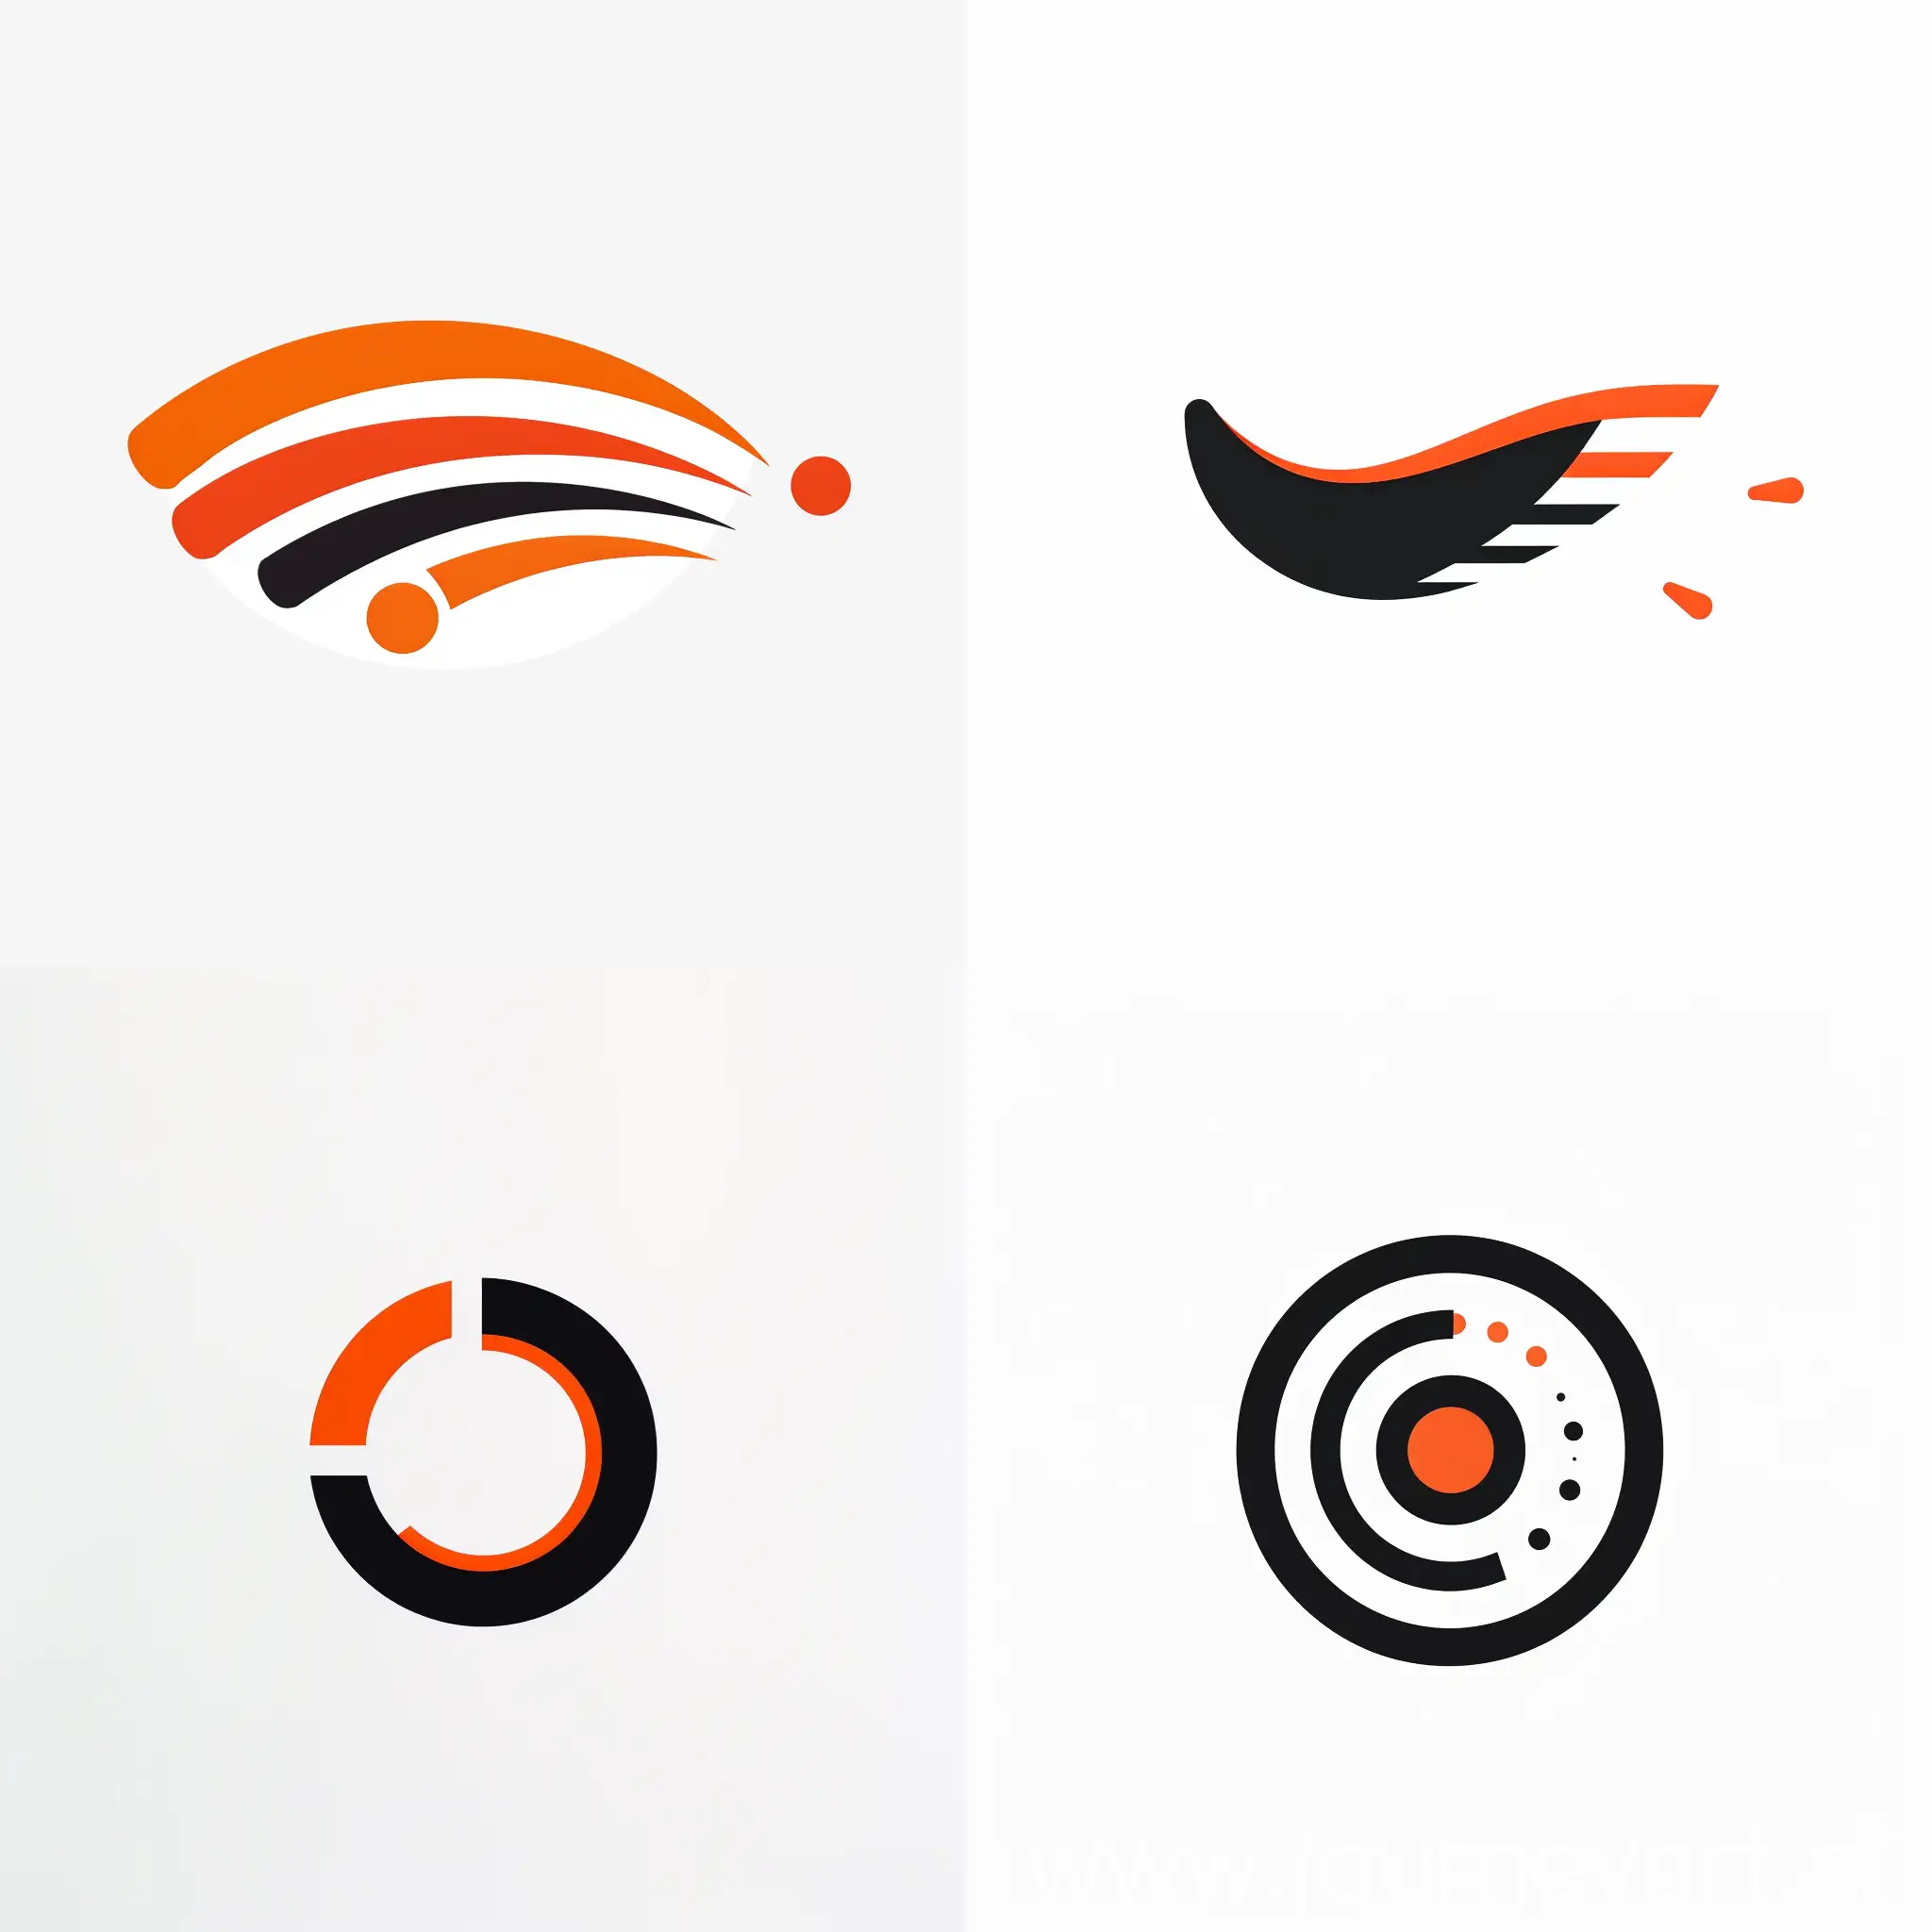 A minimalist logo for a web designer --sref https://img.etimg.com/thumb/msid-59738997,width-480,height-360,imgsize-21421,resizemode-75/nike.jpg